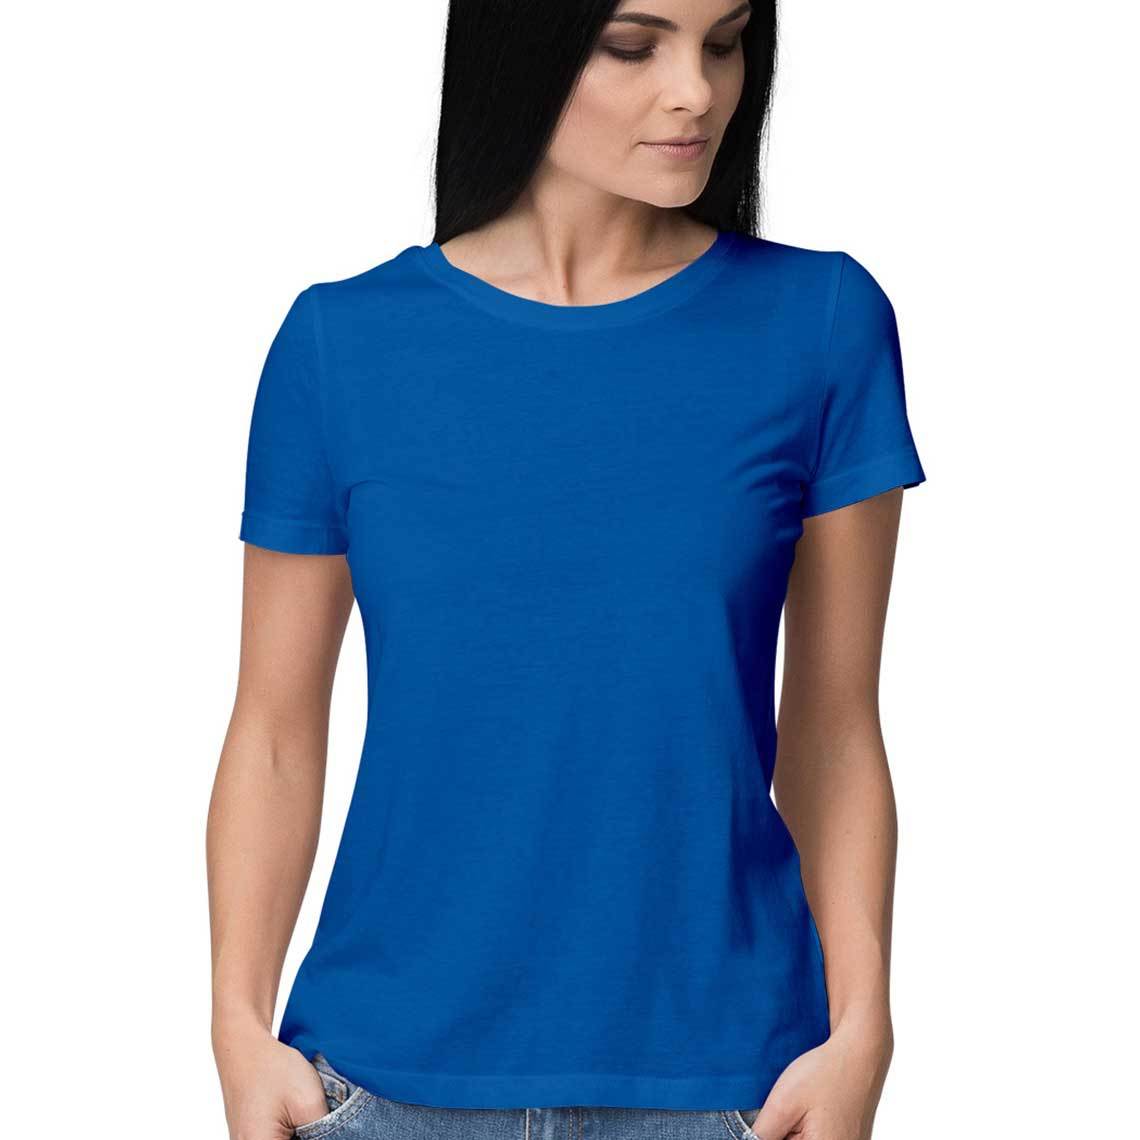 plain blue t shirt women's